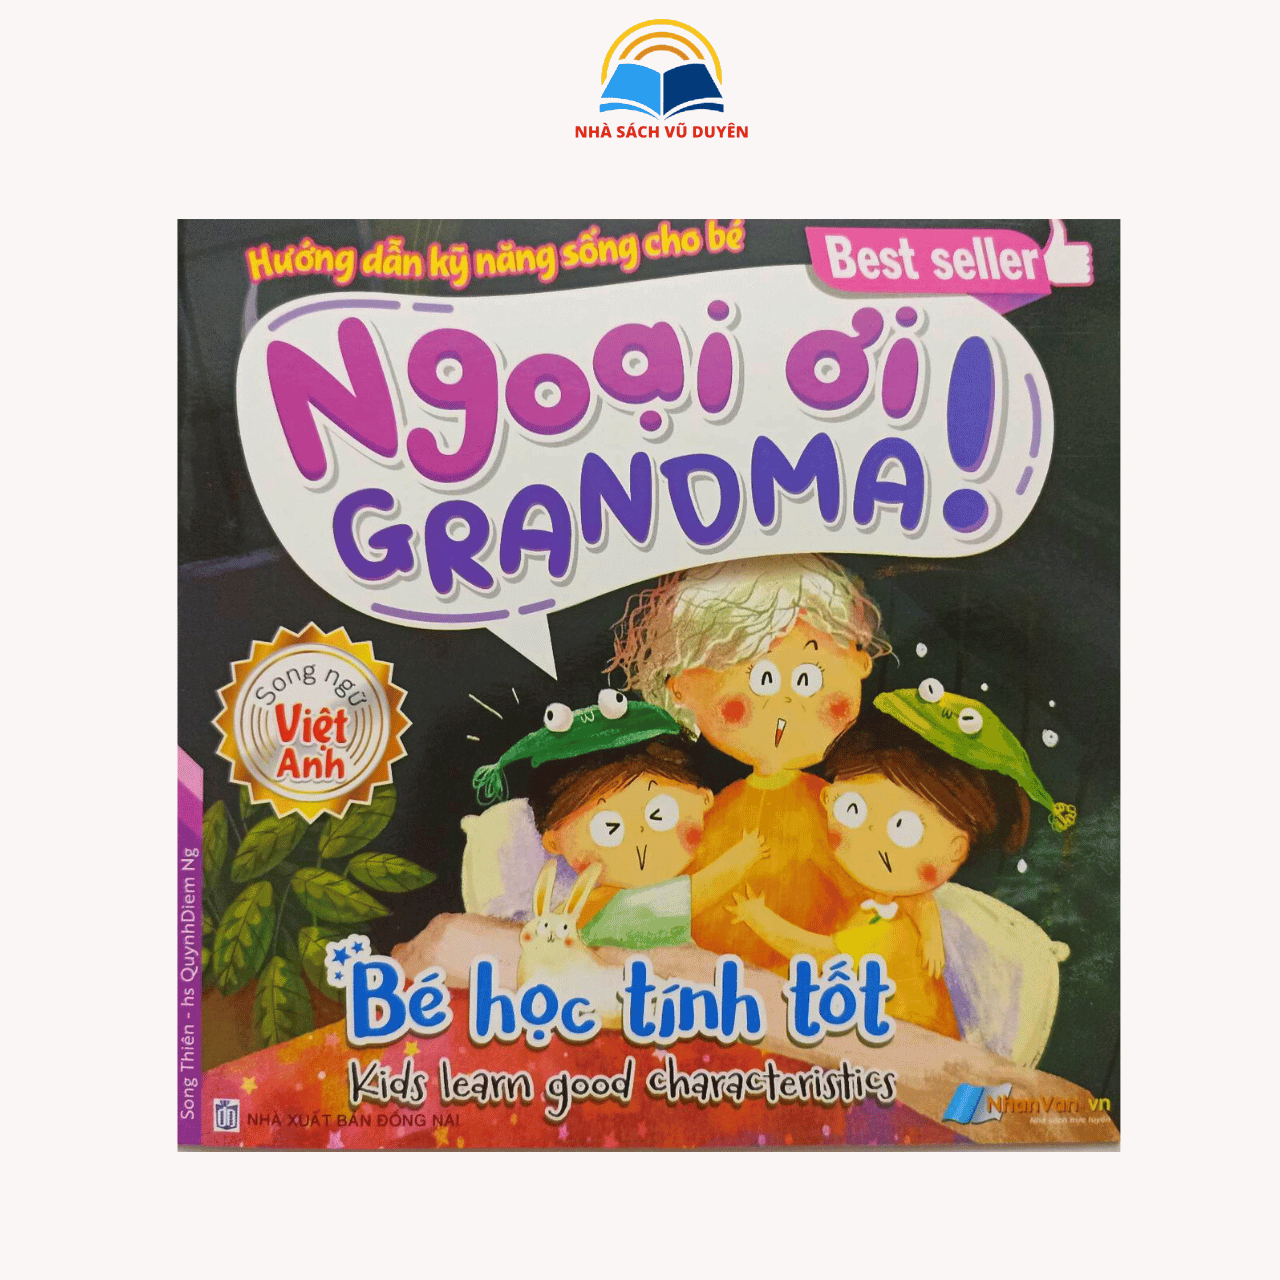 Sách Hướng dẫn kỹ năng sống cho bé - Ngoại ơi Grandma! (Song ngữ việt - anh)